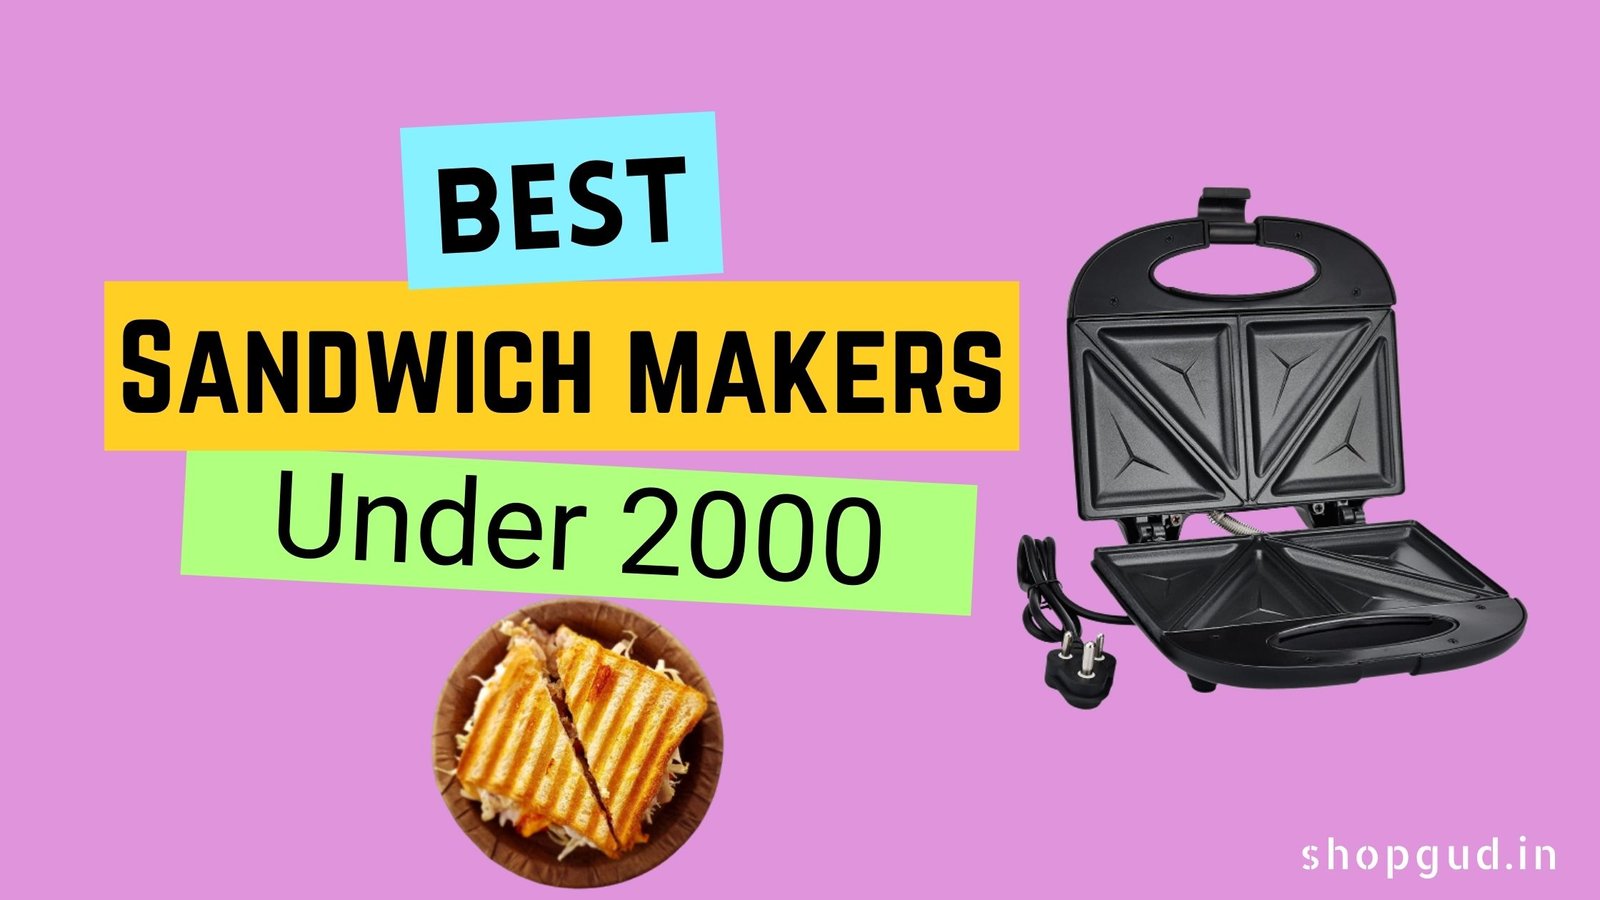 Best Sandwich maker under 2000